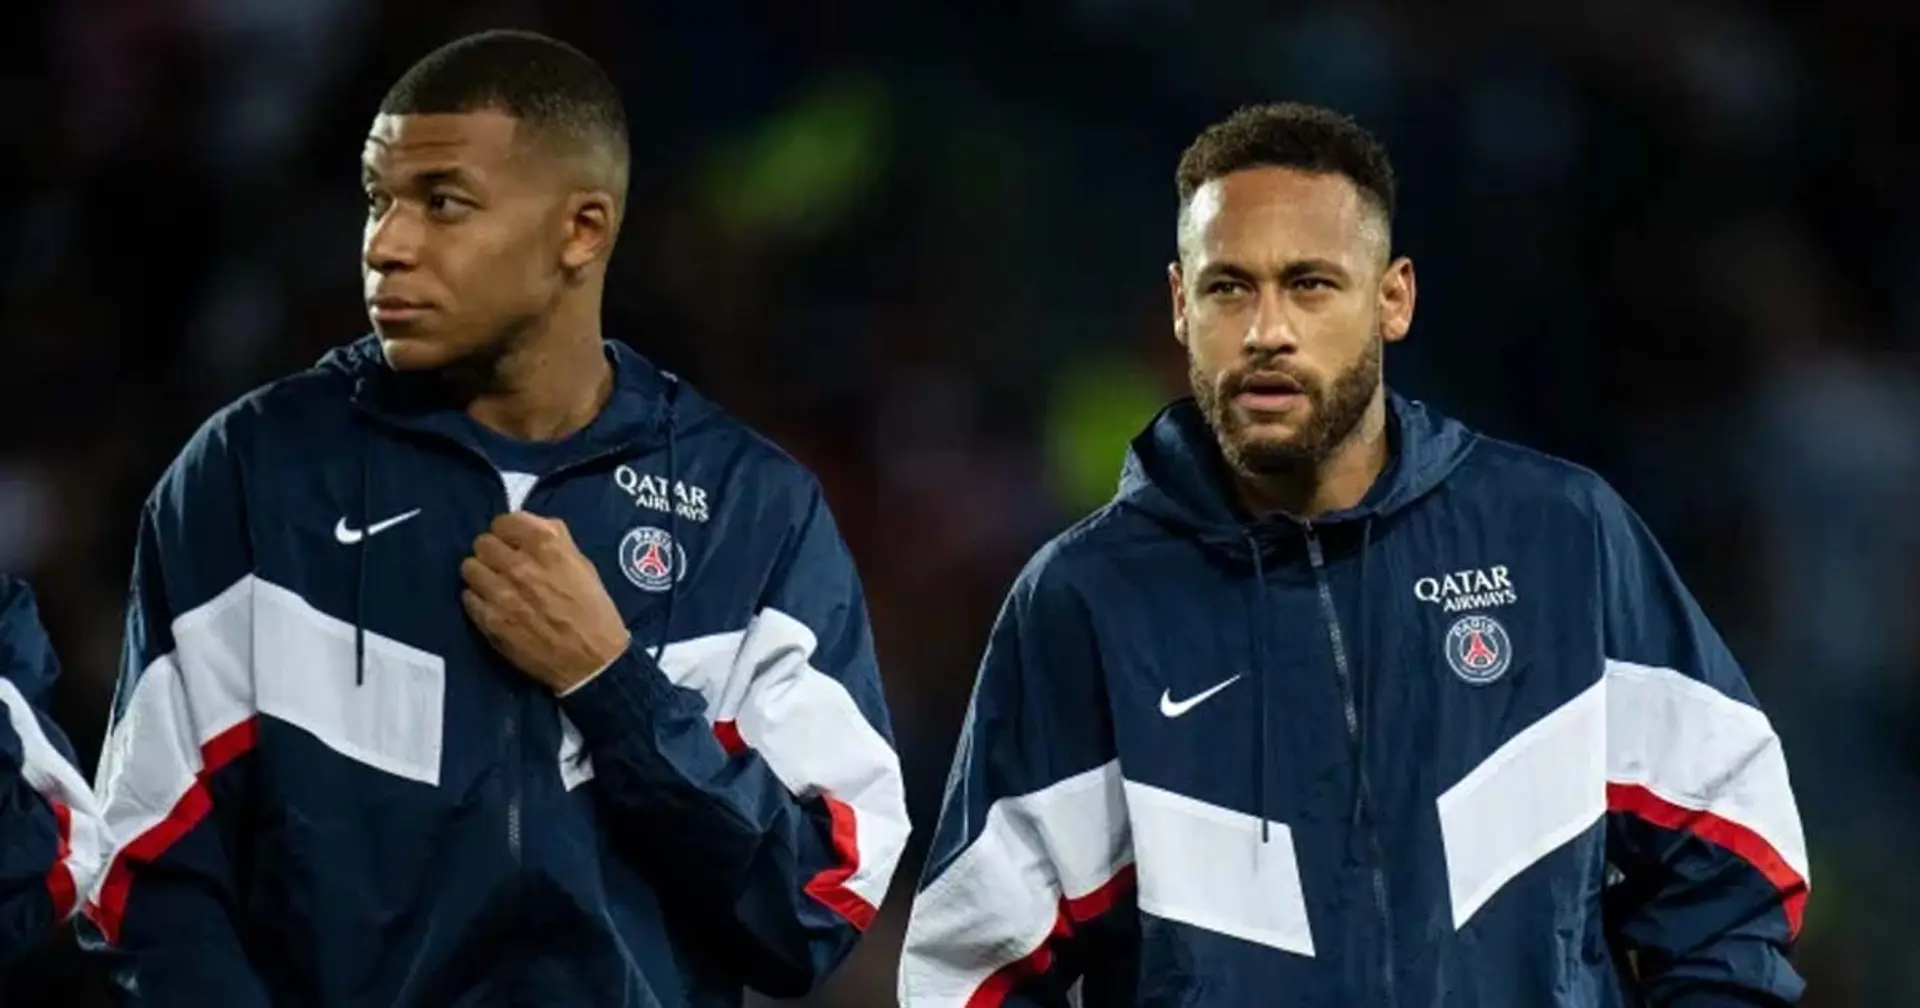 Téléfoot rapporte "qu'il n'y a pas d'animosité" entre Mbappé et Neymar à l'issue du match face à la Juve 